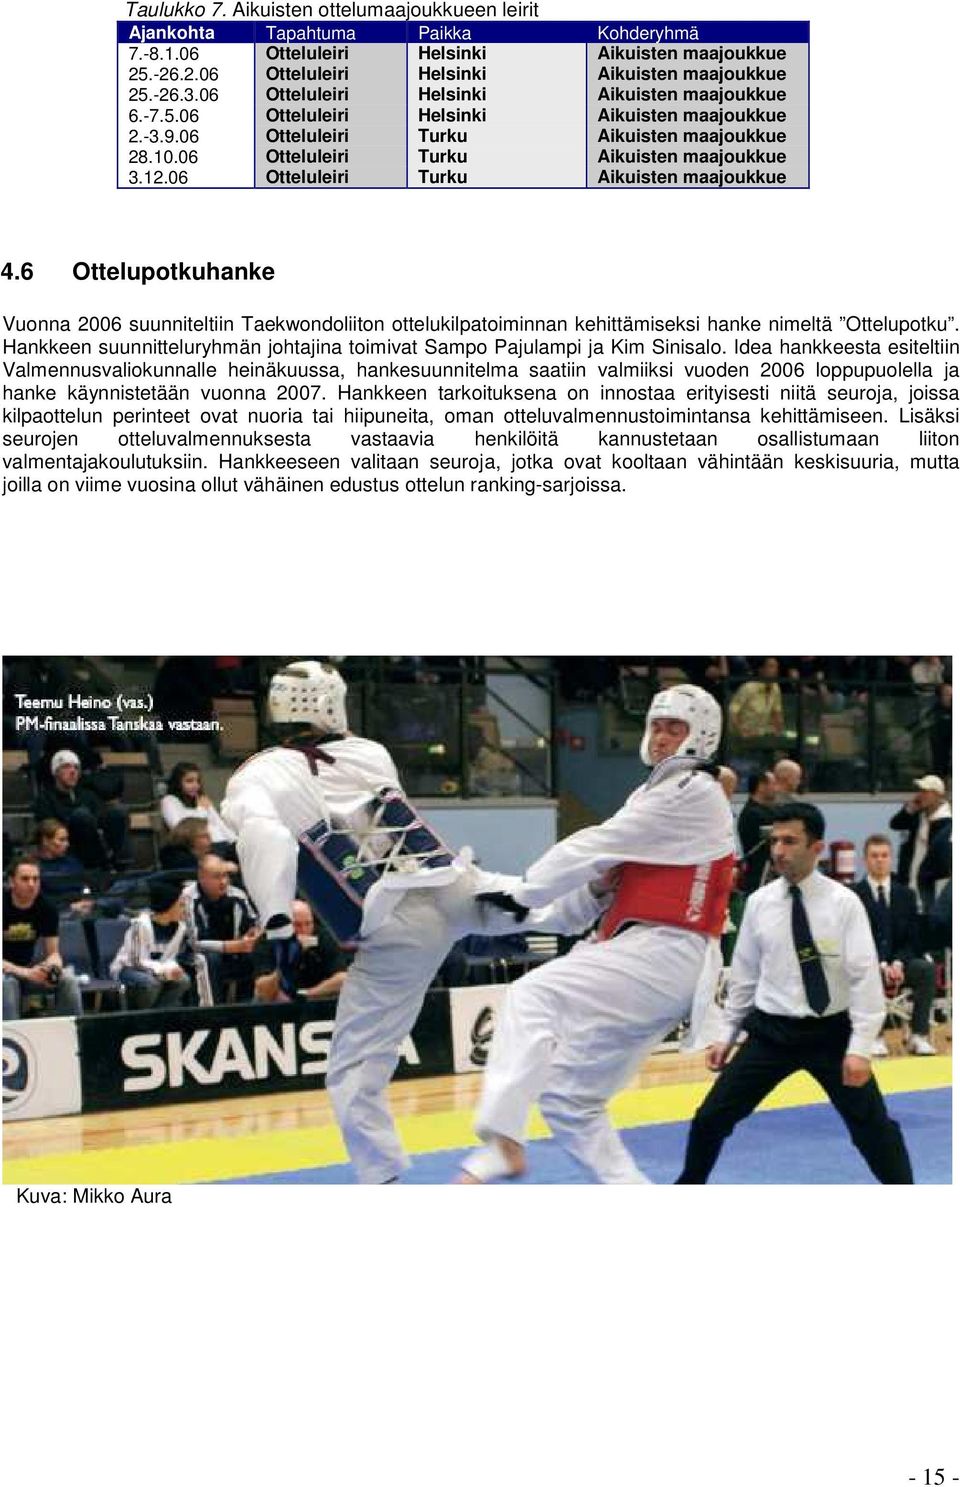 06 Otteluleiri Turku Aikuisten maajoukkue 4.6 Ottelupotkuhanke Vuonna 2006 suunniteltiin Taekwondoliiton ottelukilpatoiminnan kehittämiseksi hanke nimeltä Ottelupotku.